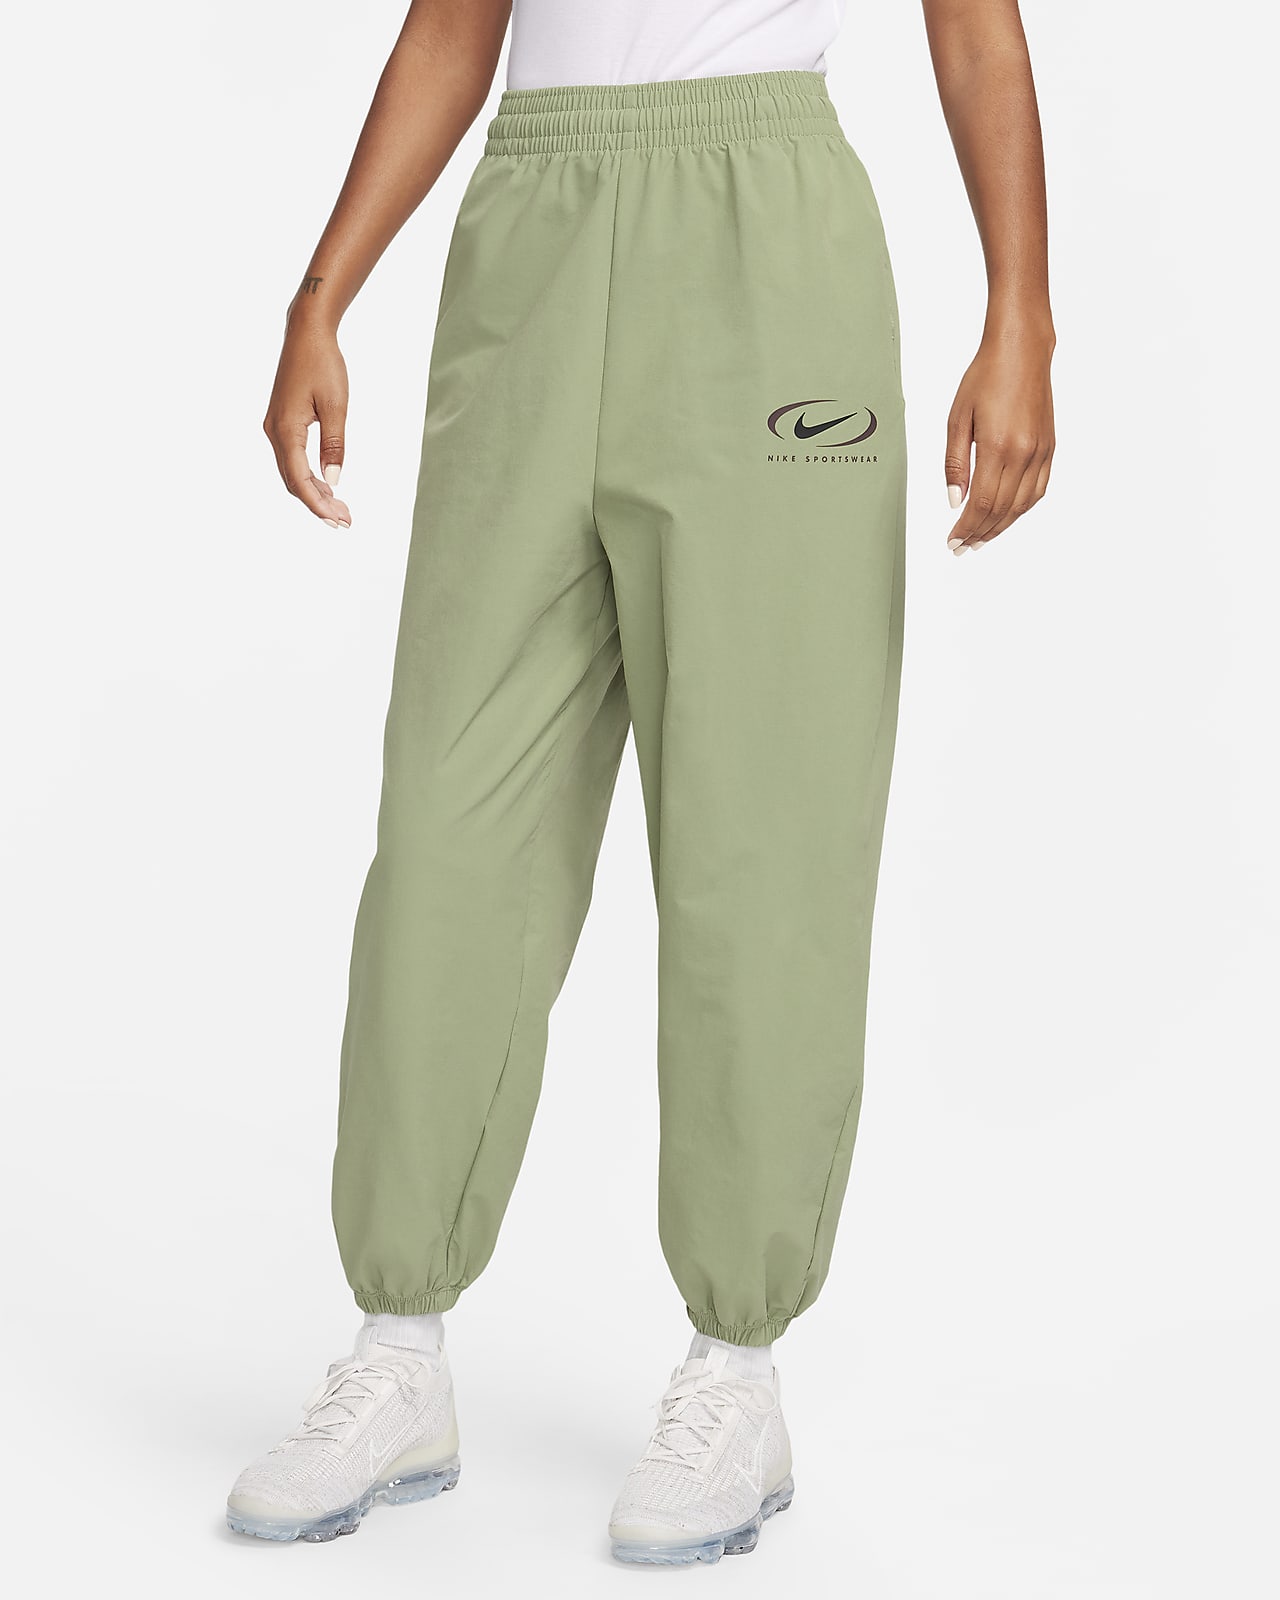 Dámské tkané běžecké kalhoty Nike Sportswear